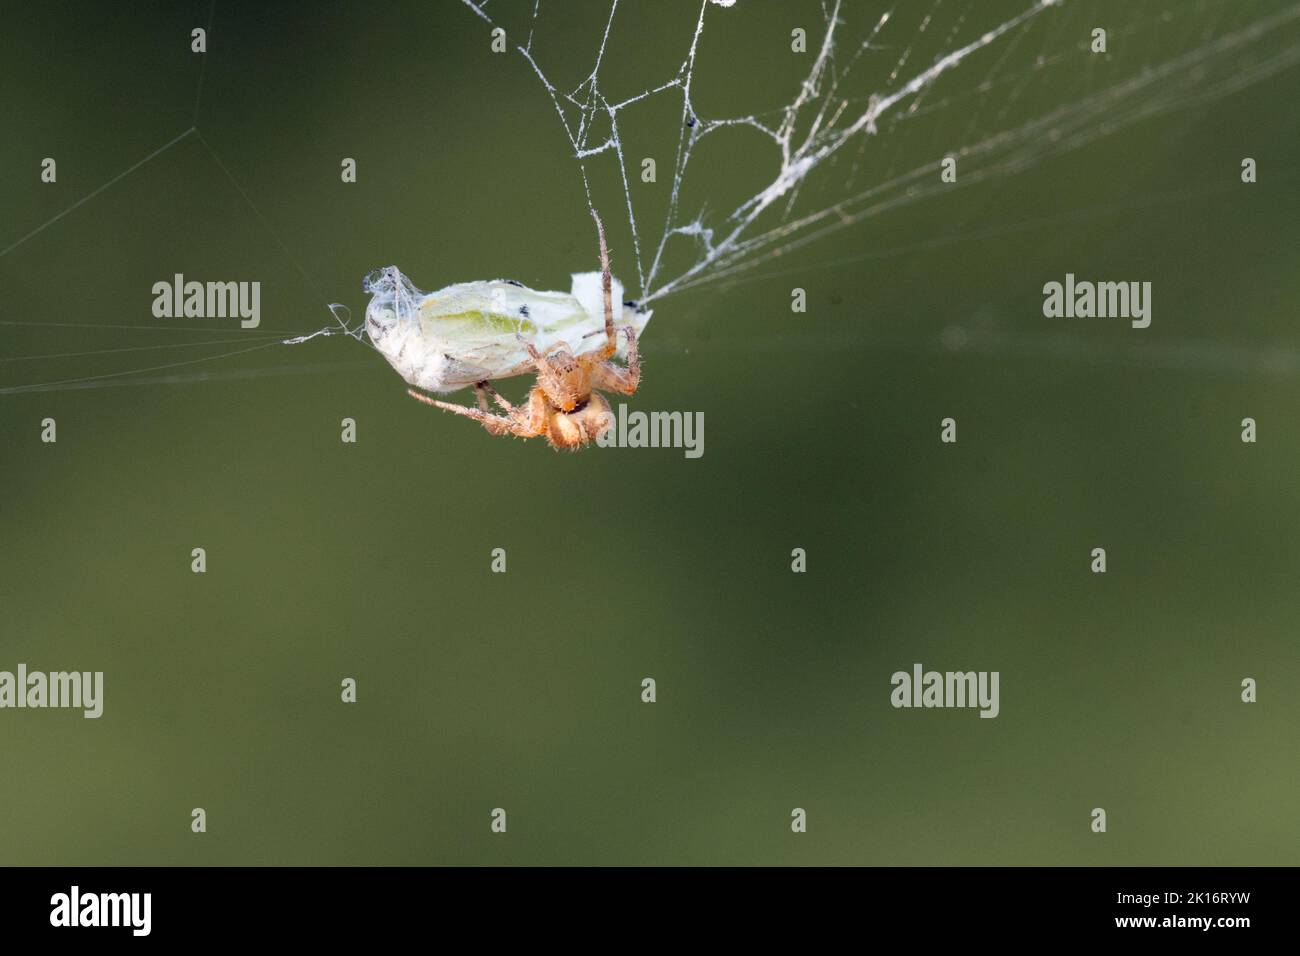 Eine gekrönte Reichspinne (Araneus diadematus) tötet einen Kohlschmetterling, der in seinem Netz in einem Garten im Bundesstaat Washington gezüchtet wurde. Stockfoto